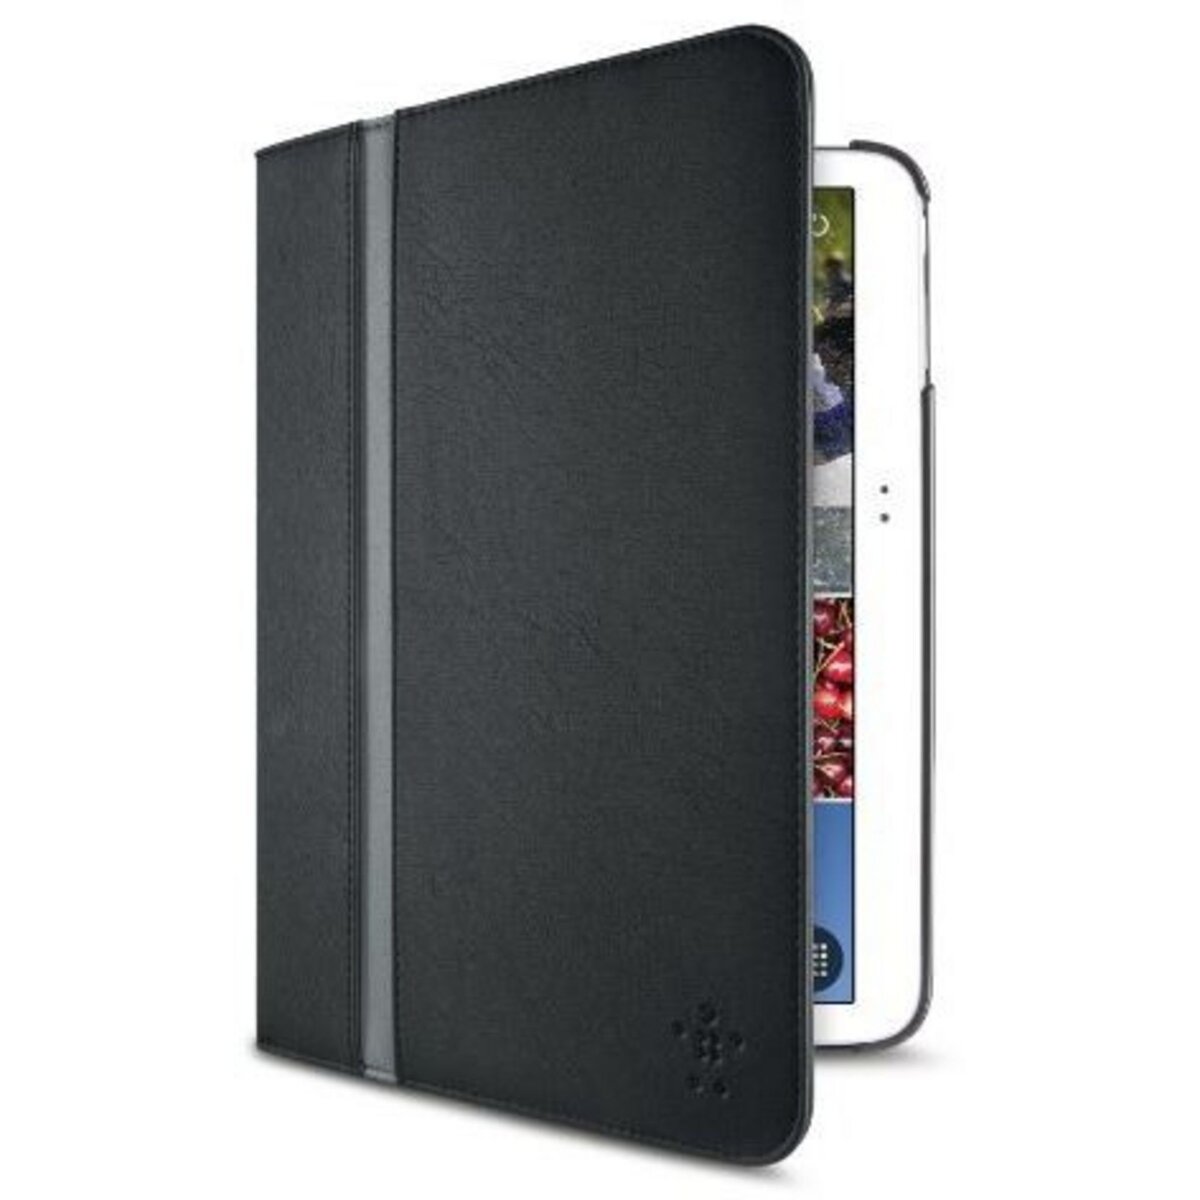 BELKIN Accessoire tablette tactile Folio Galaxy Tab Pro